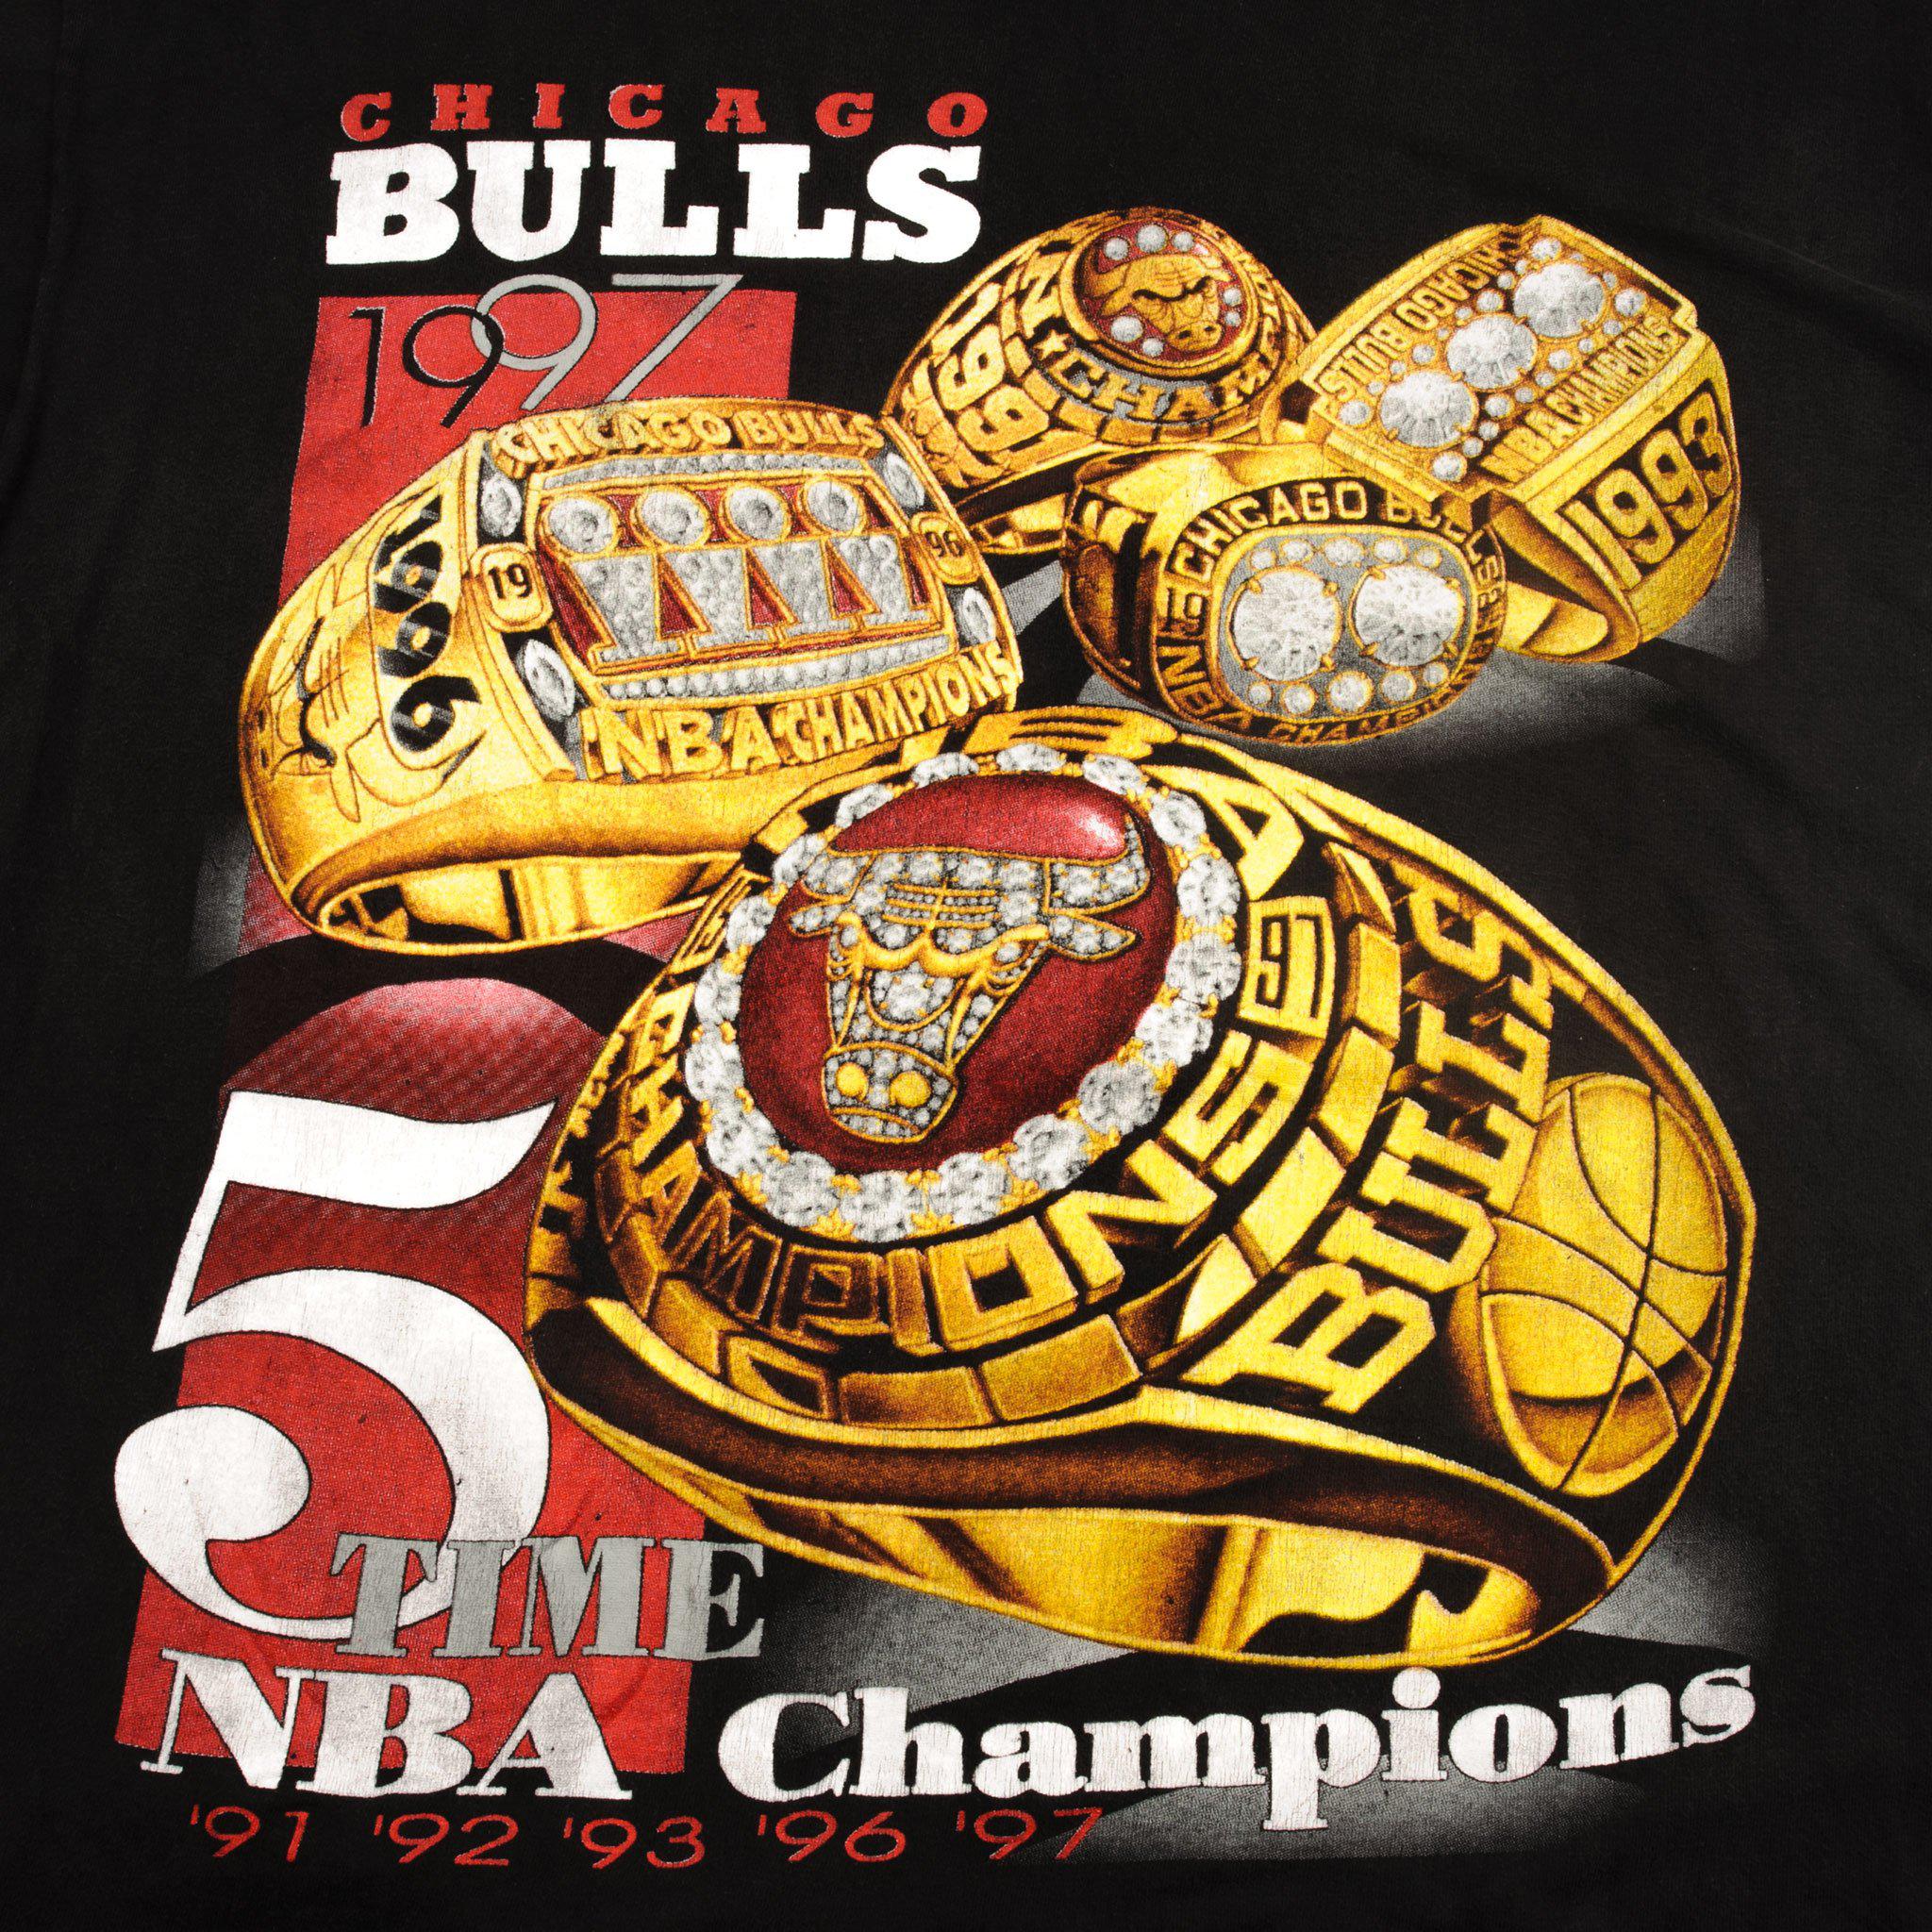 Vintage Chicago Bulls 1997 Champions Tshirt 